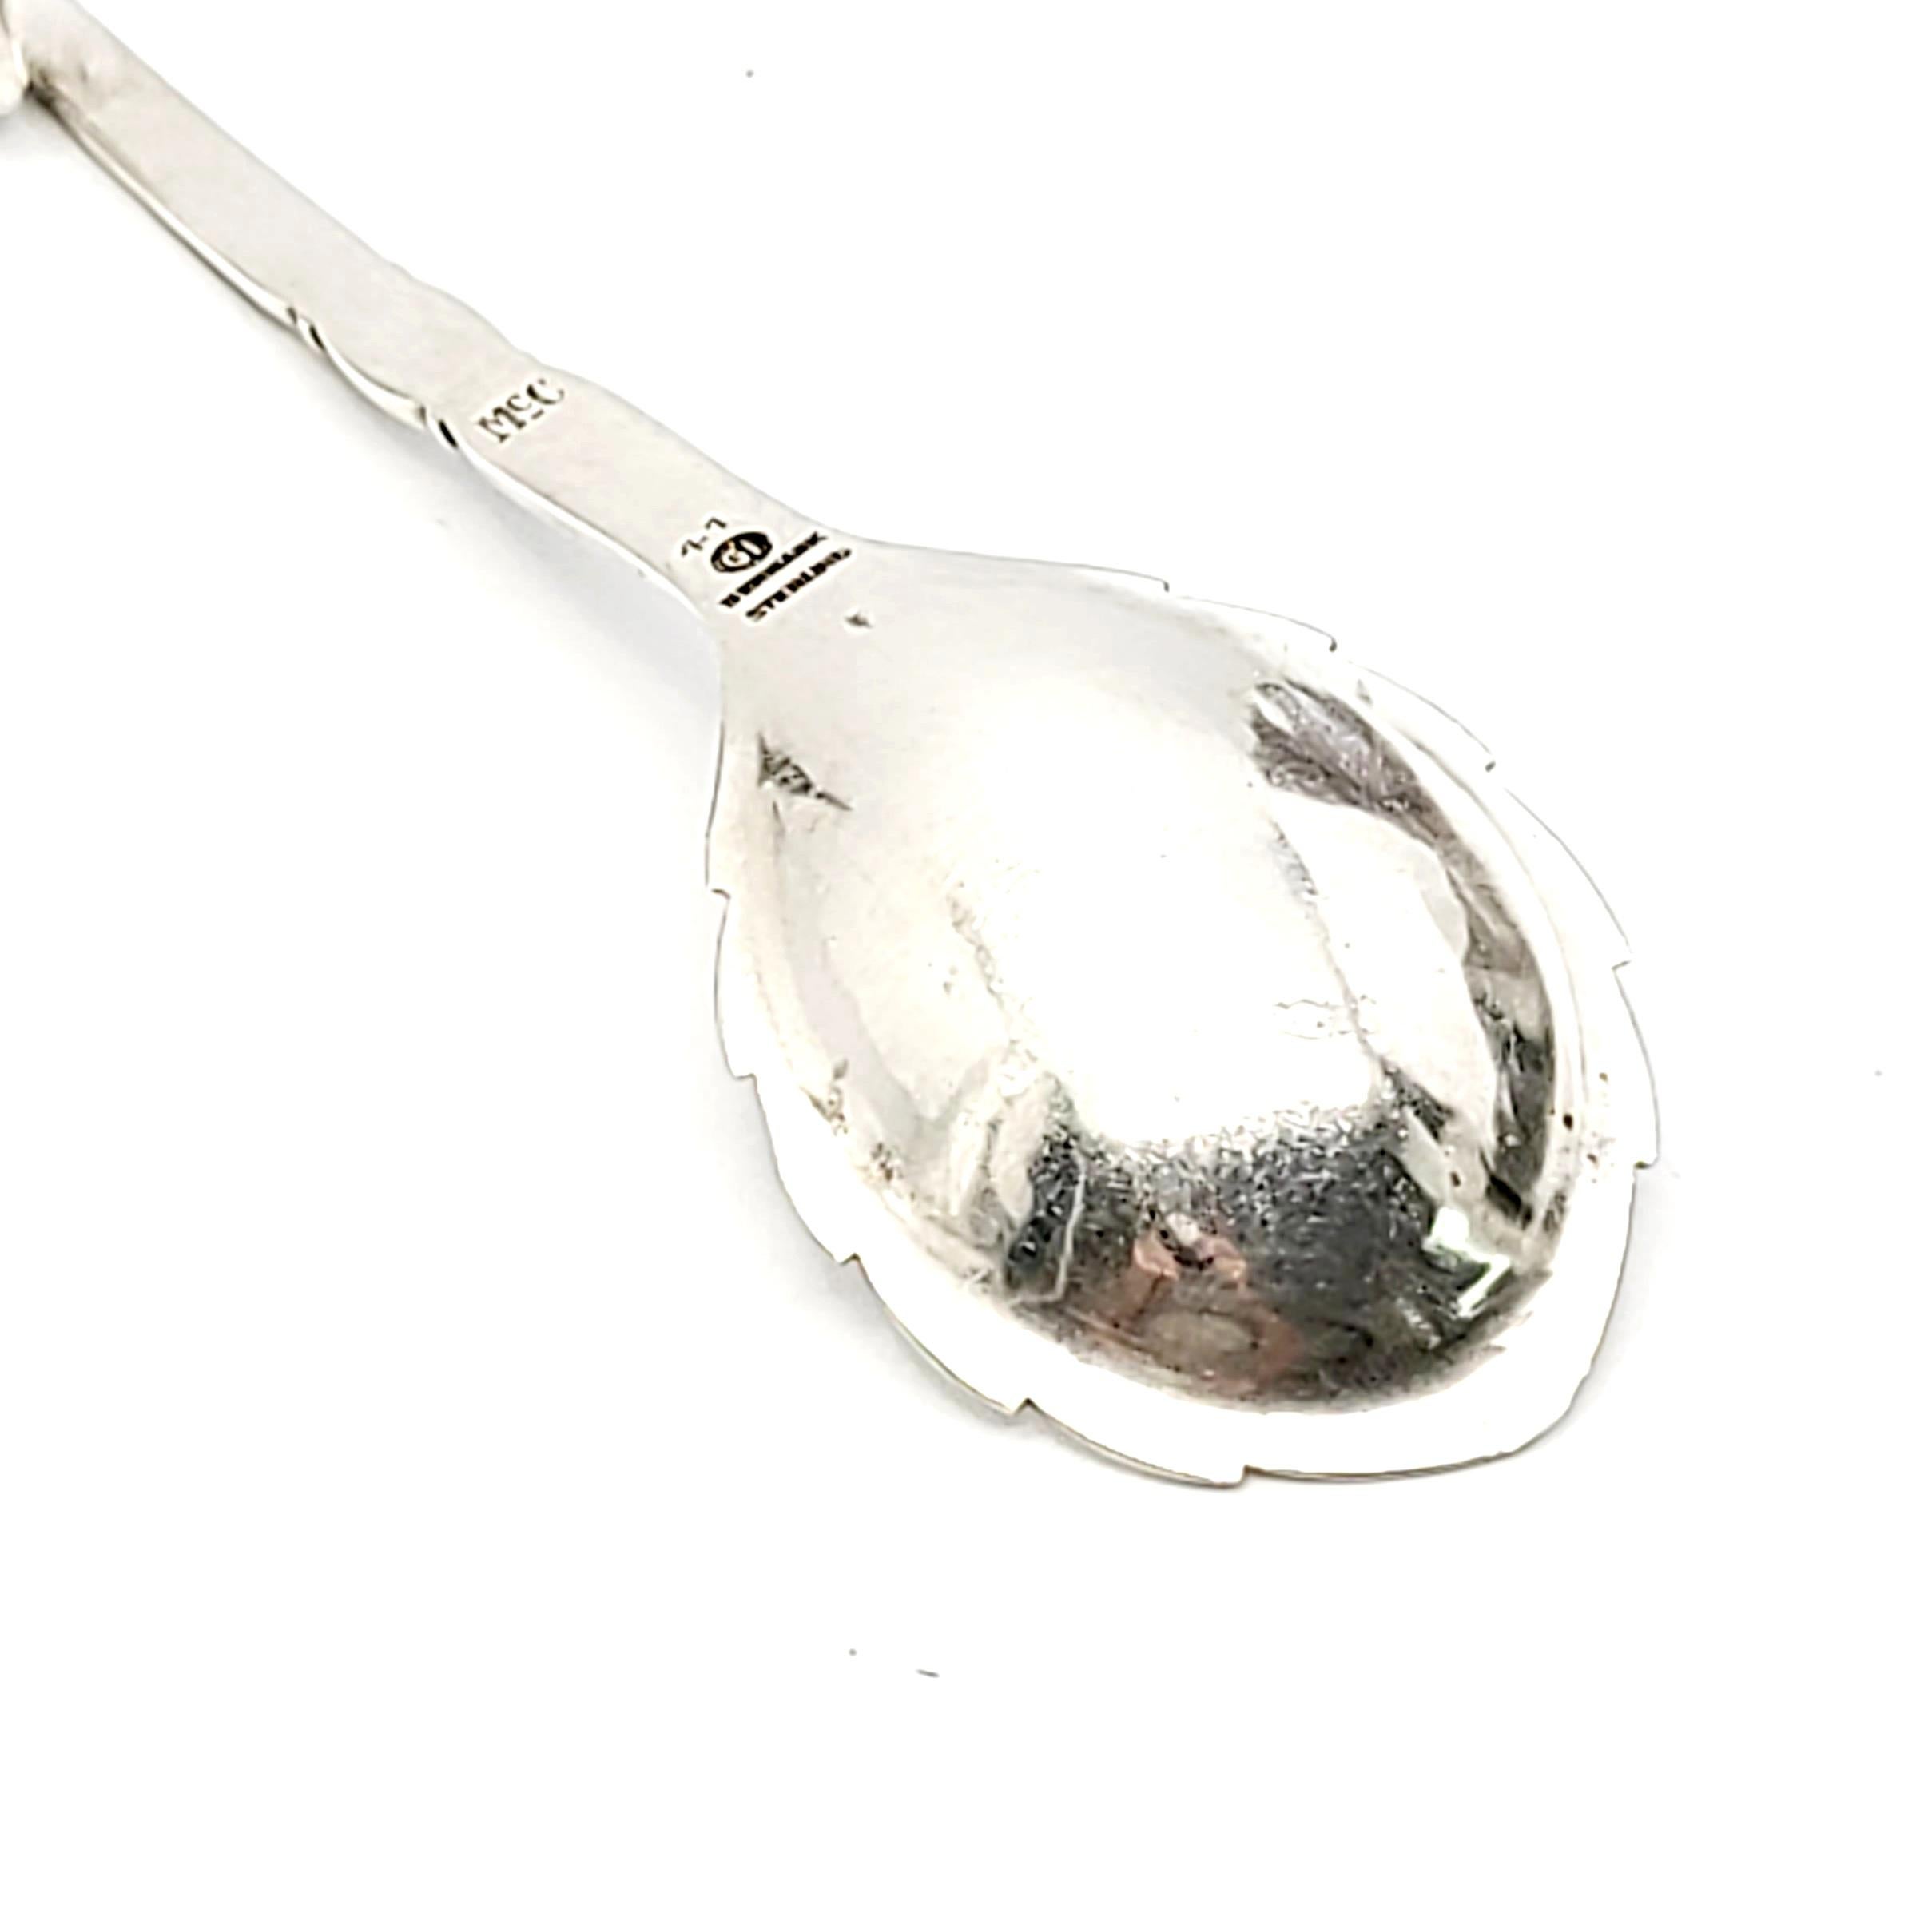 Georg Jensen Denmark Sterling Silver Ornamental #41 Sugar Spoon 3